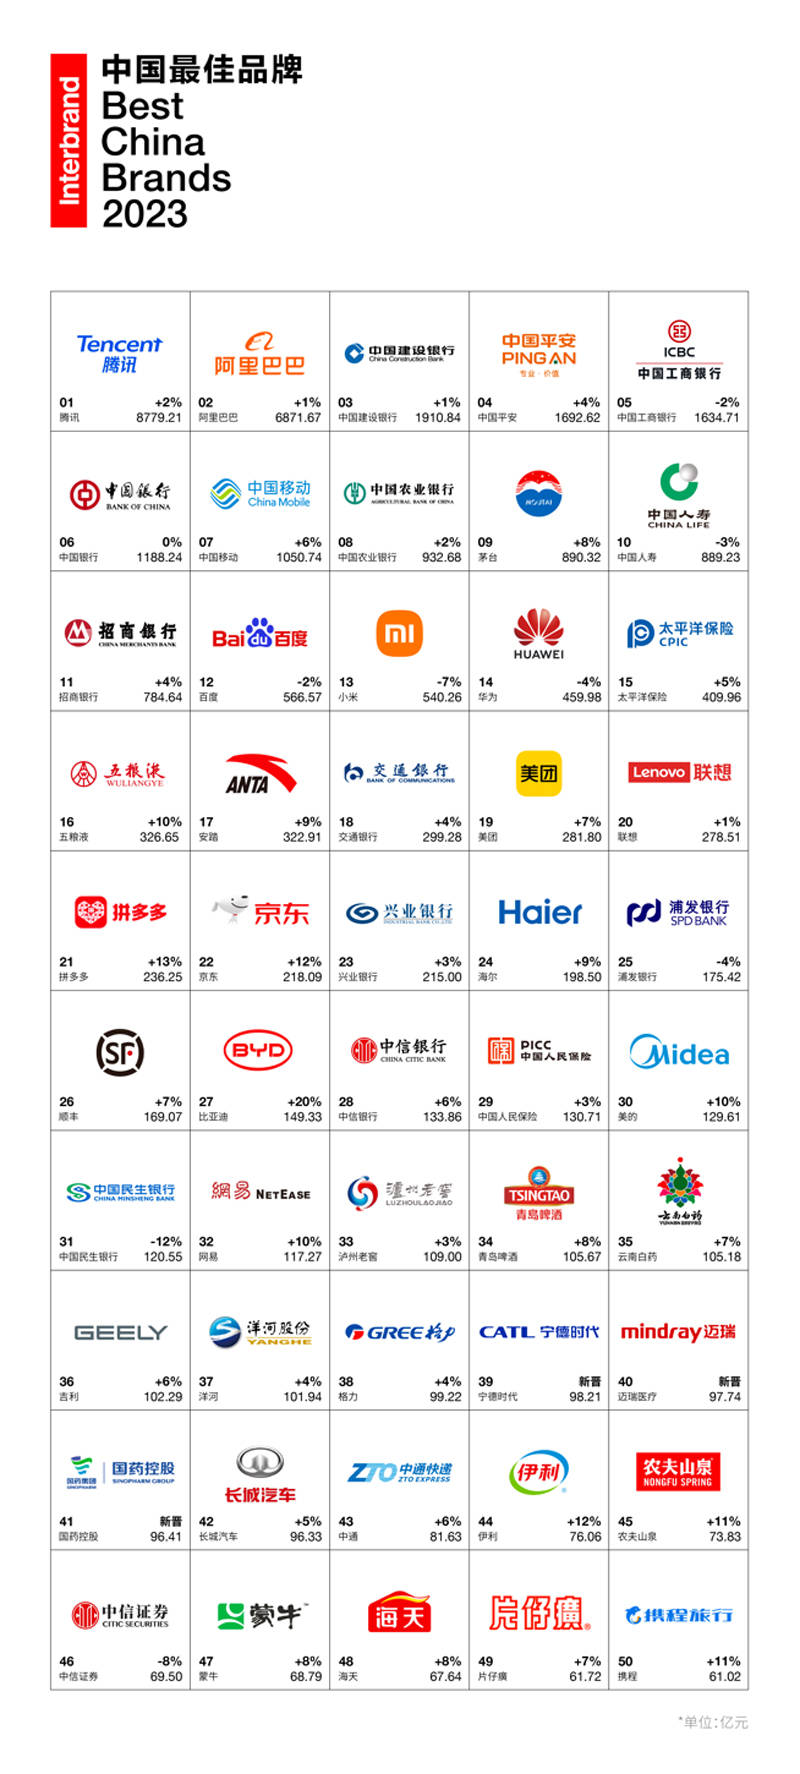 interbrand发布《2023中国最佳品牌排行榜》:新能源与大健康品牌顺势